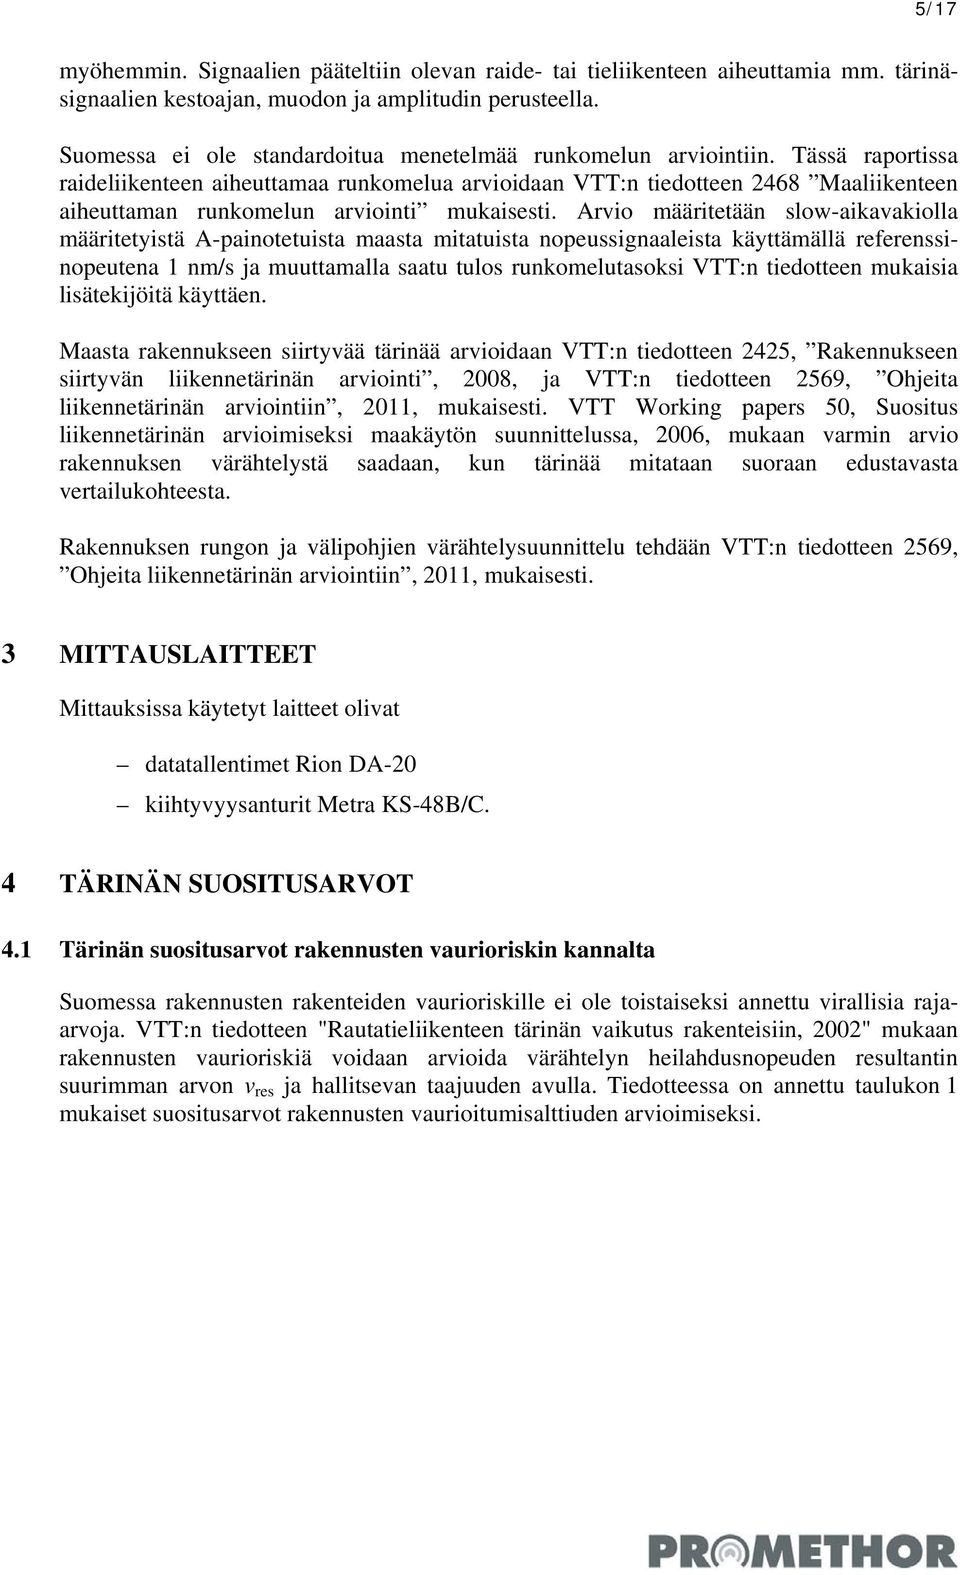 Tässä raportissa raideliikenteen aiheuttamaa runkomelua arvioidaan VTT:n tiedotteen 26 Maaliikenteen aiheuttaman runkomelun arviointi mukaisesti.